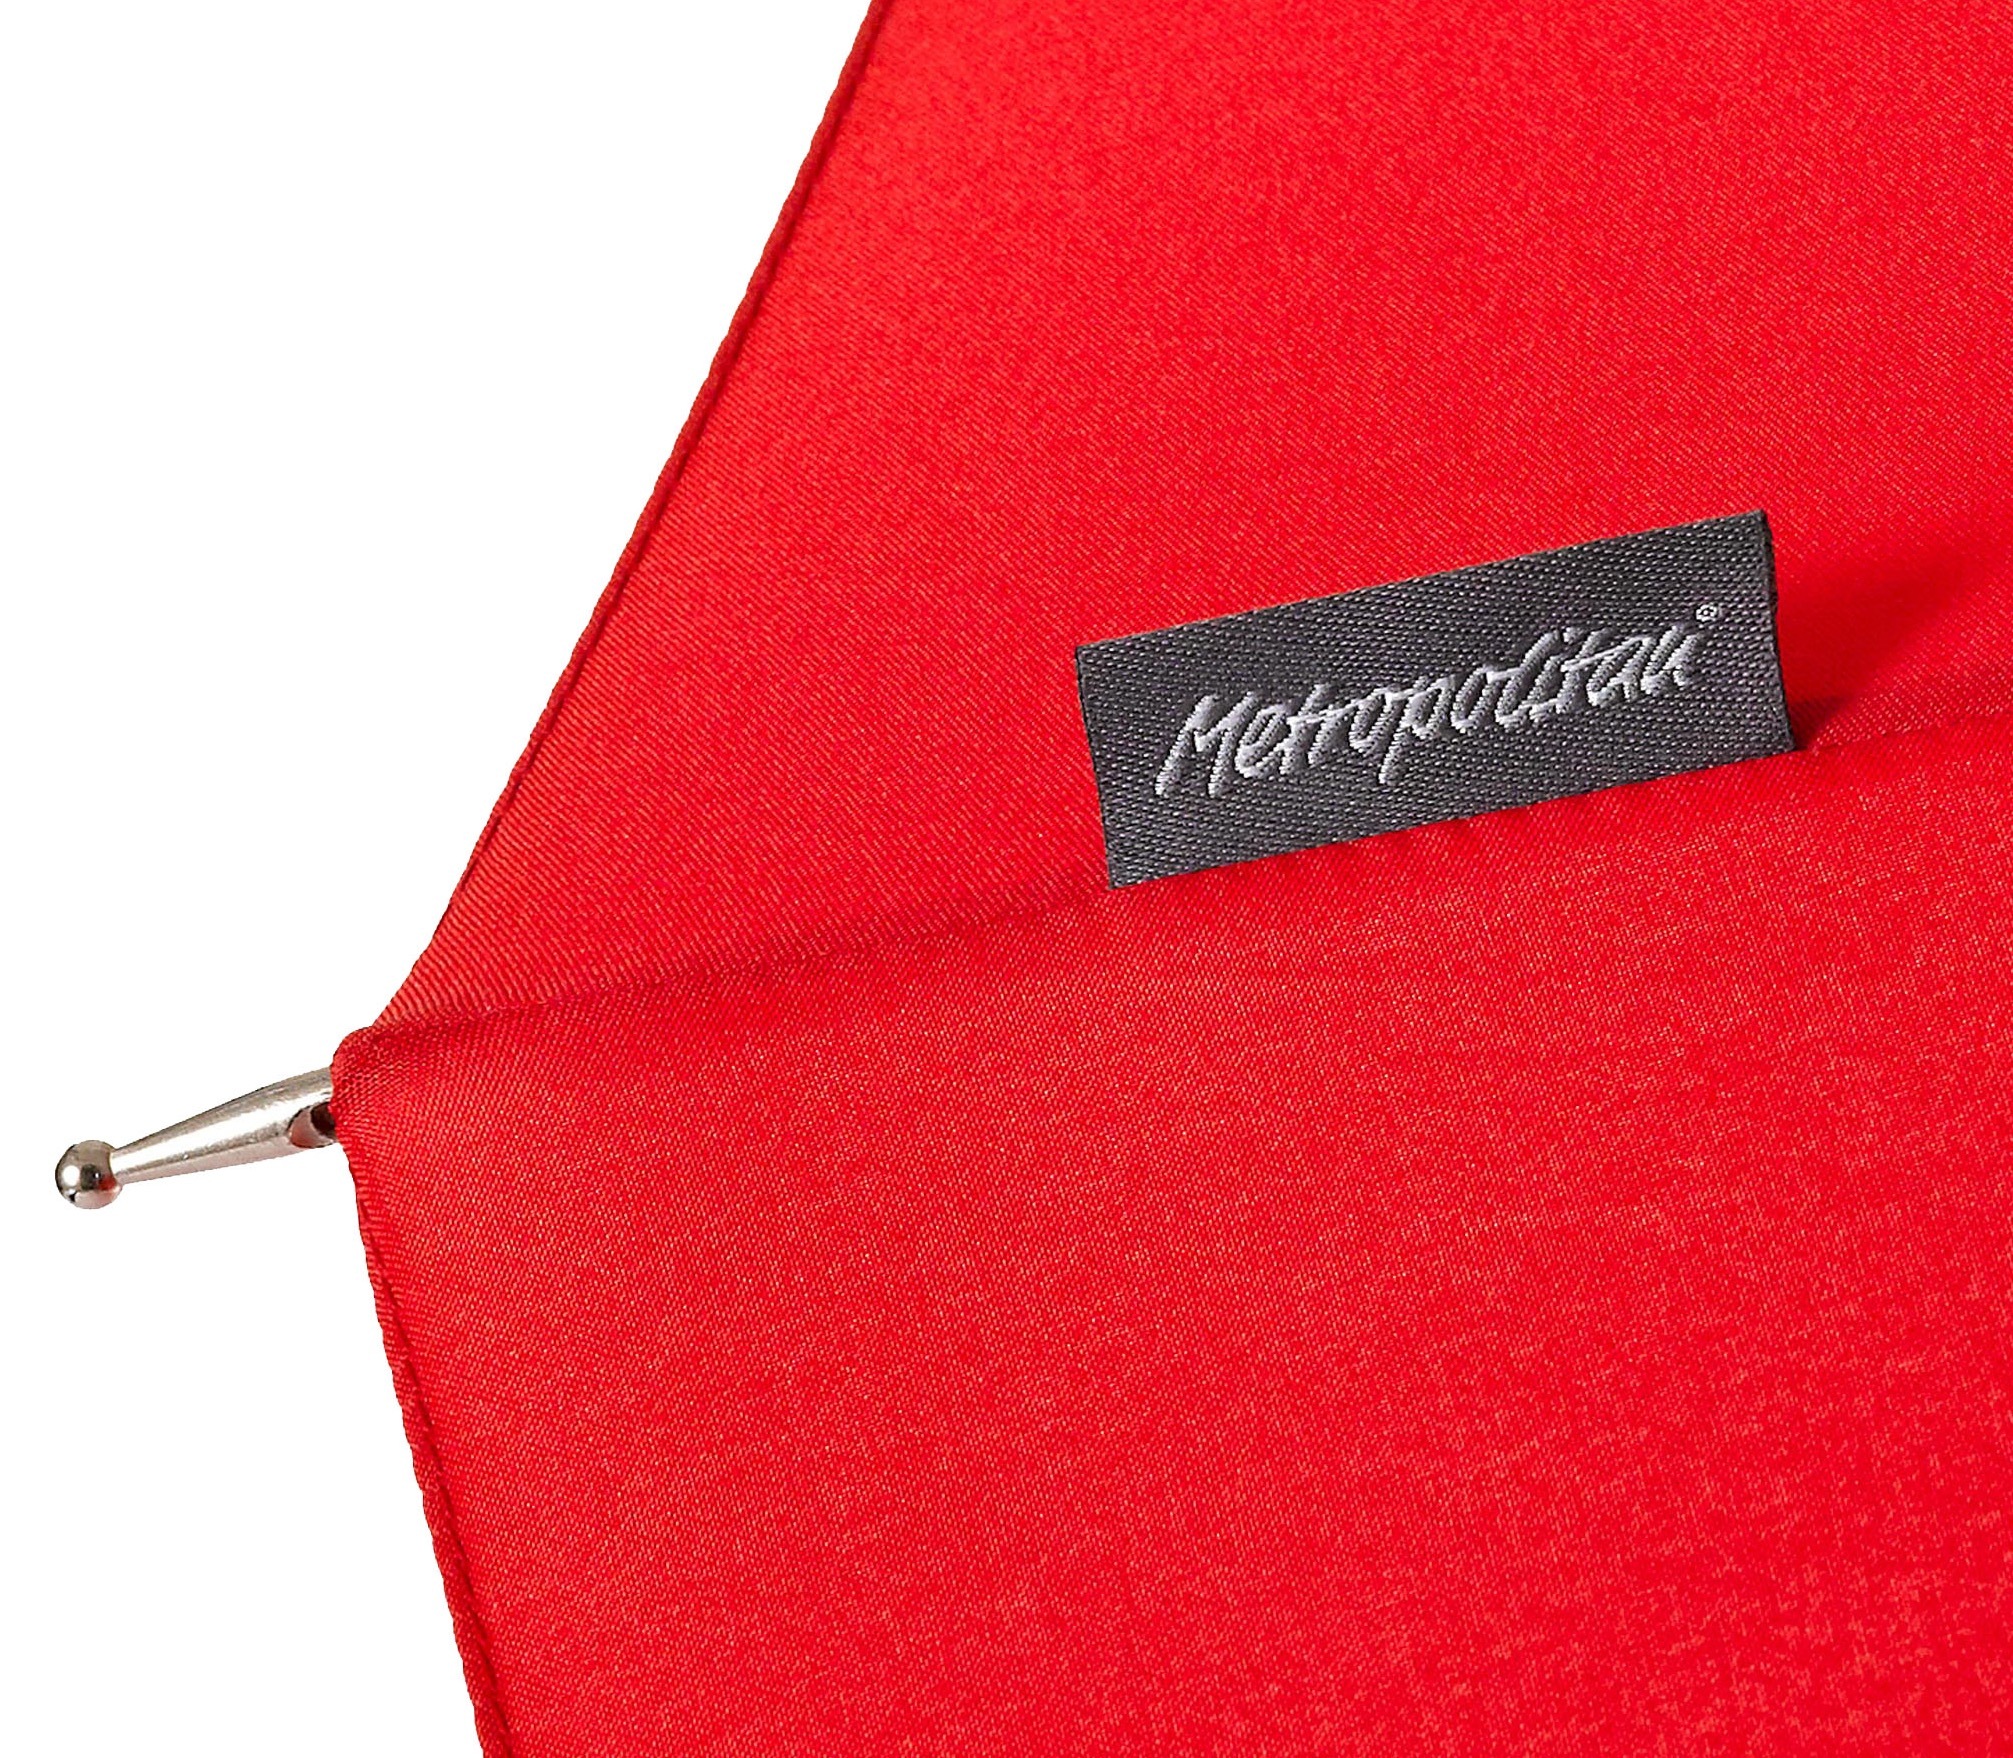 EuroSCHIRM® Stockregenschirm »Metropolitan®, rot«, mit 16 Segmenten und eleganter Dachwölbung